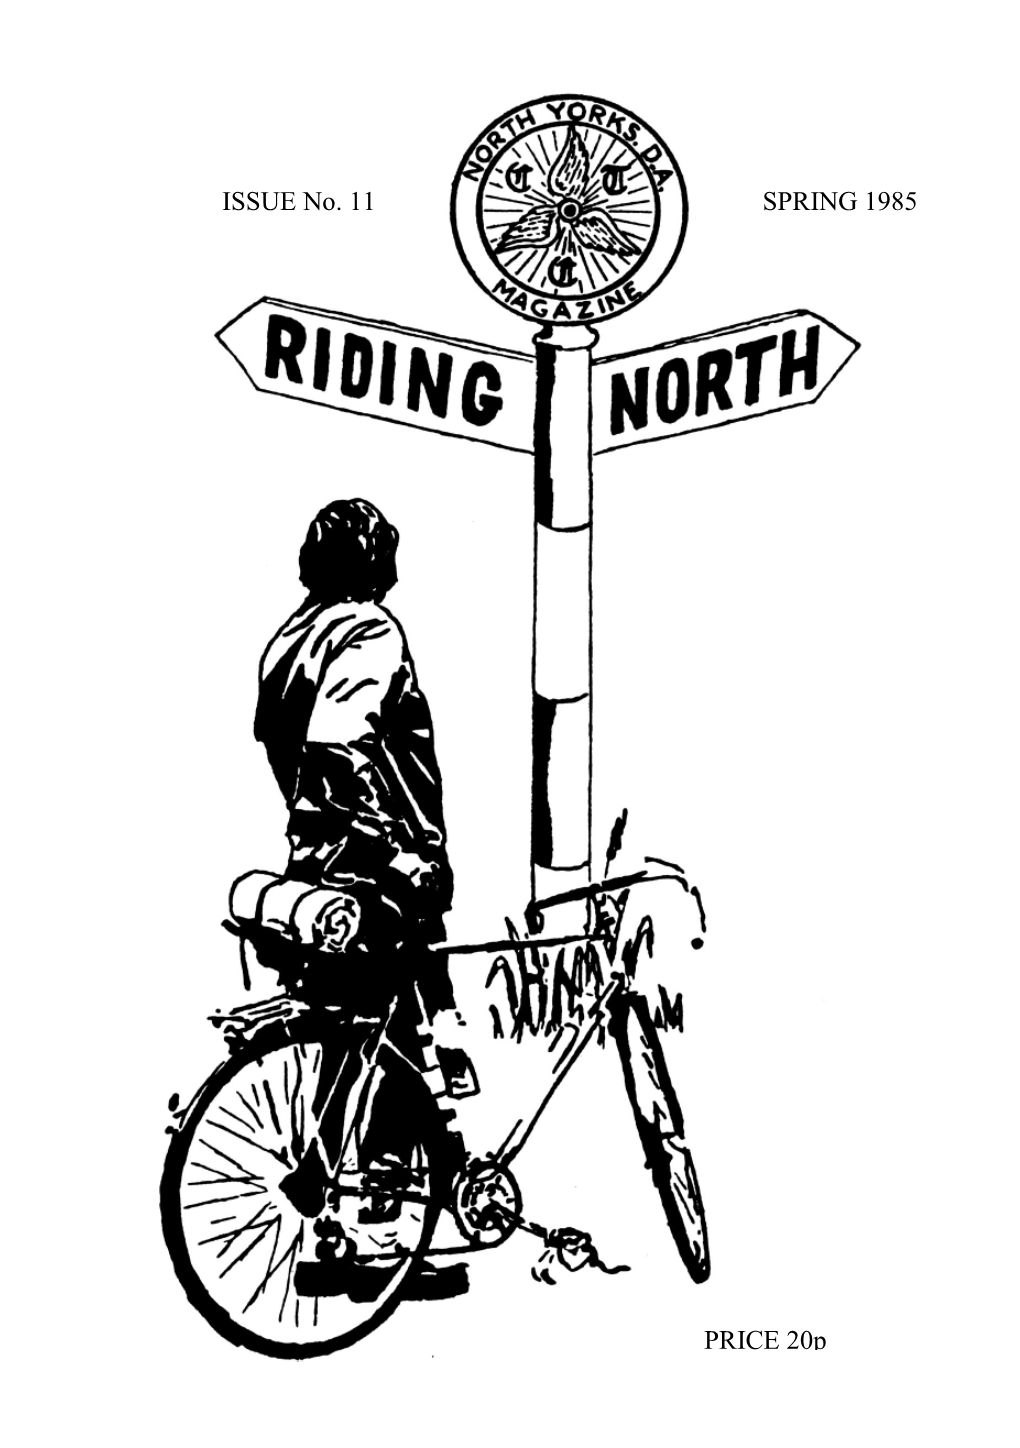 Riding North